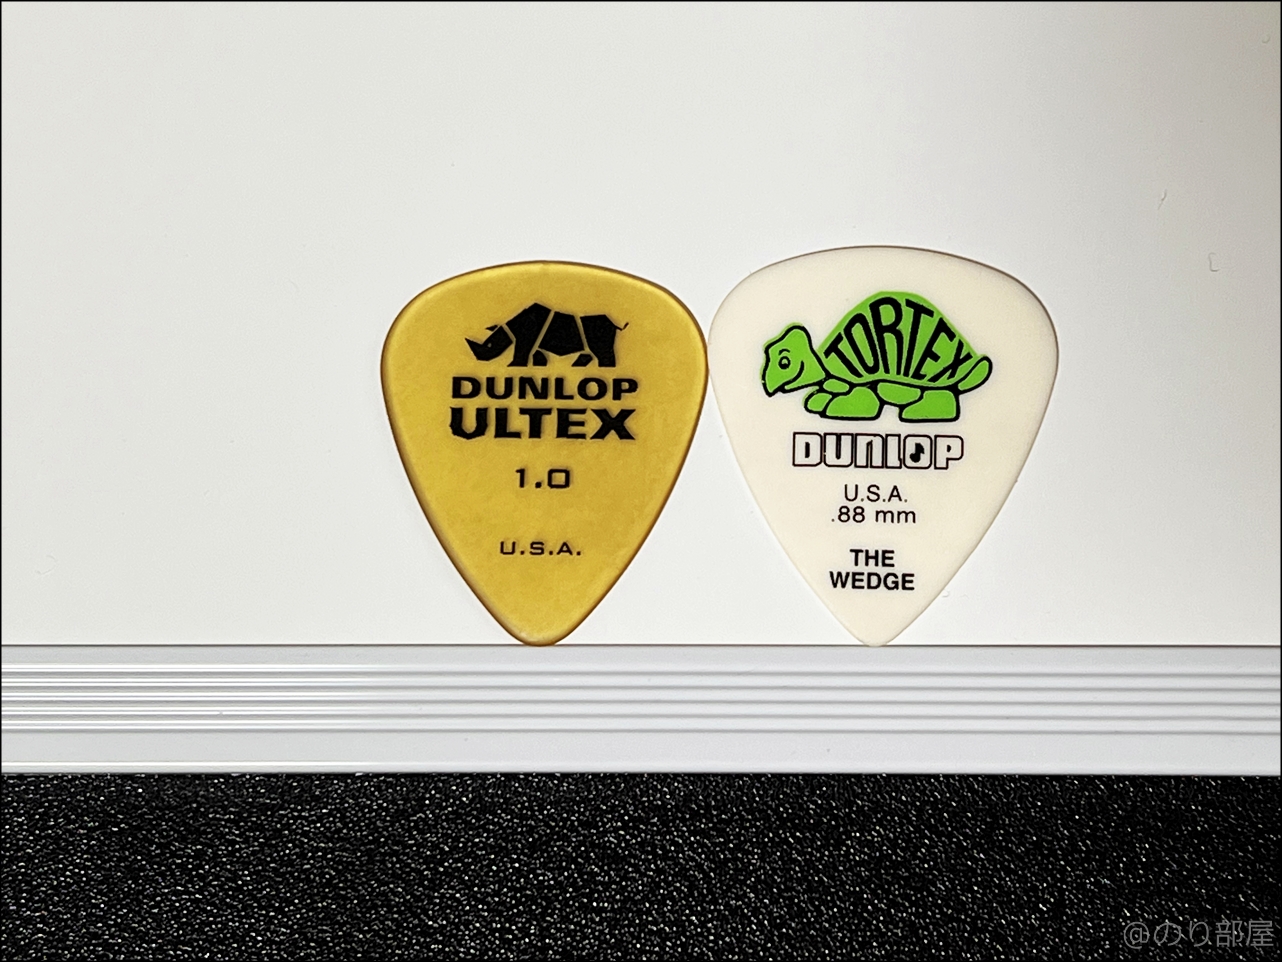 ジムダンロップ ULTEX ウルテム ティアドロップギターピックとジムダンロップWEDGEのサイズ比較